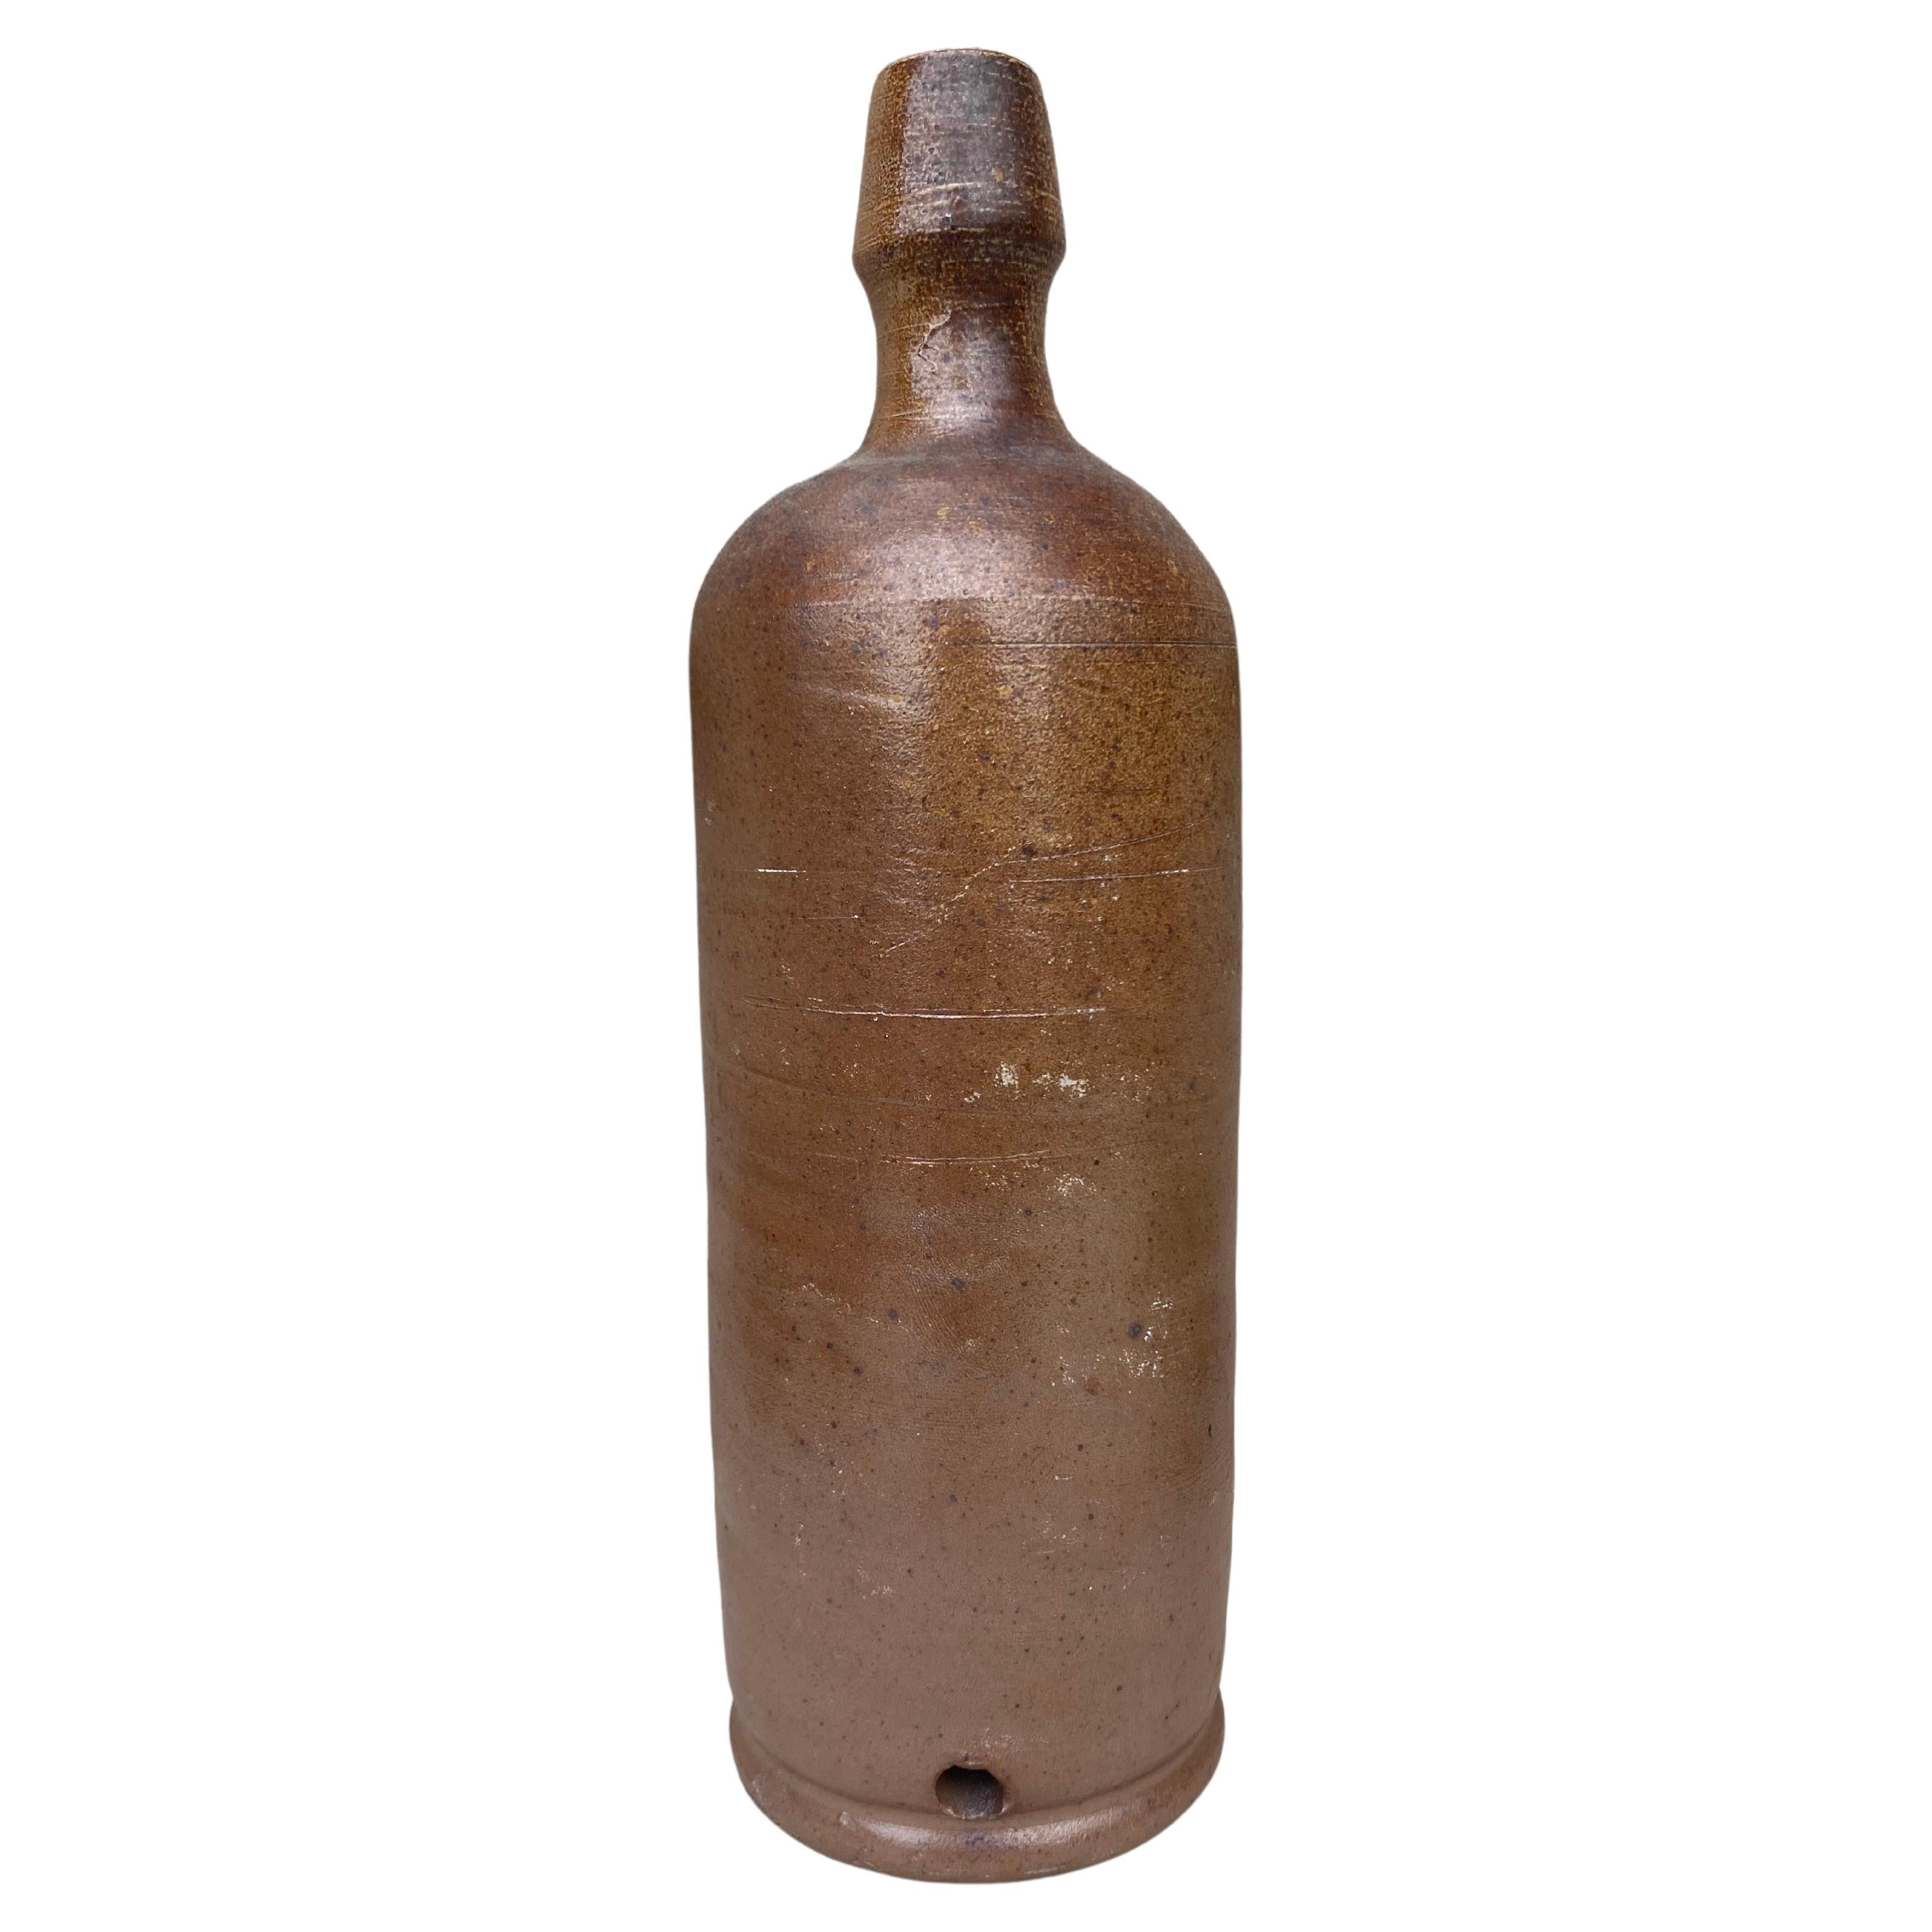 Französische Cidreflasche aus der Normandie, Ende des 19. Jahrhunderts.
13 Flaschen erhältlich, die separat verkauft werden.
Verschiedene Größen.